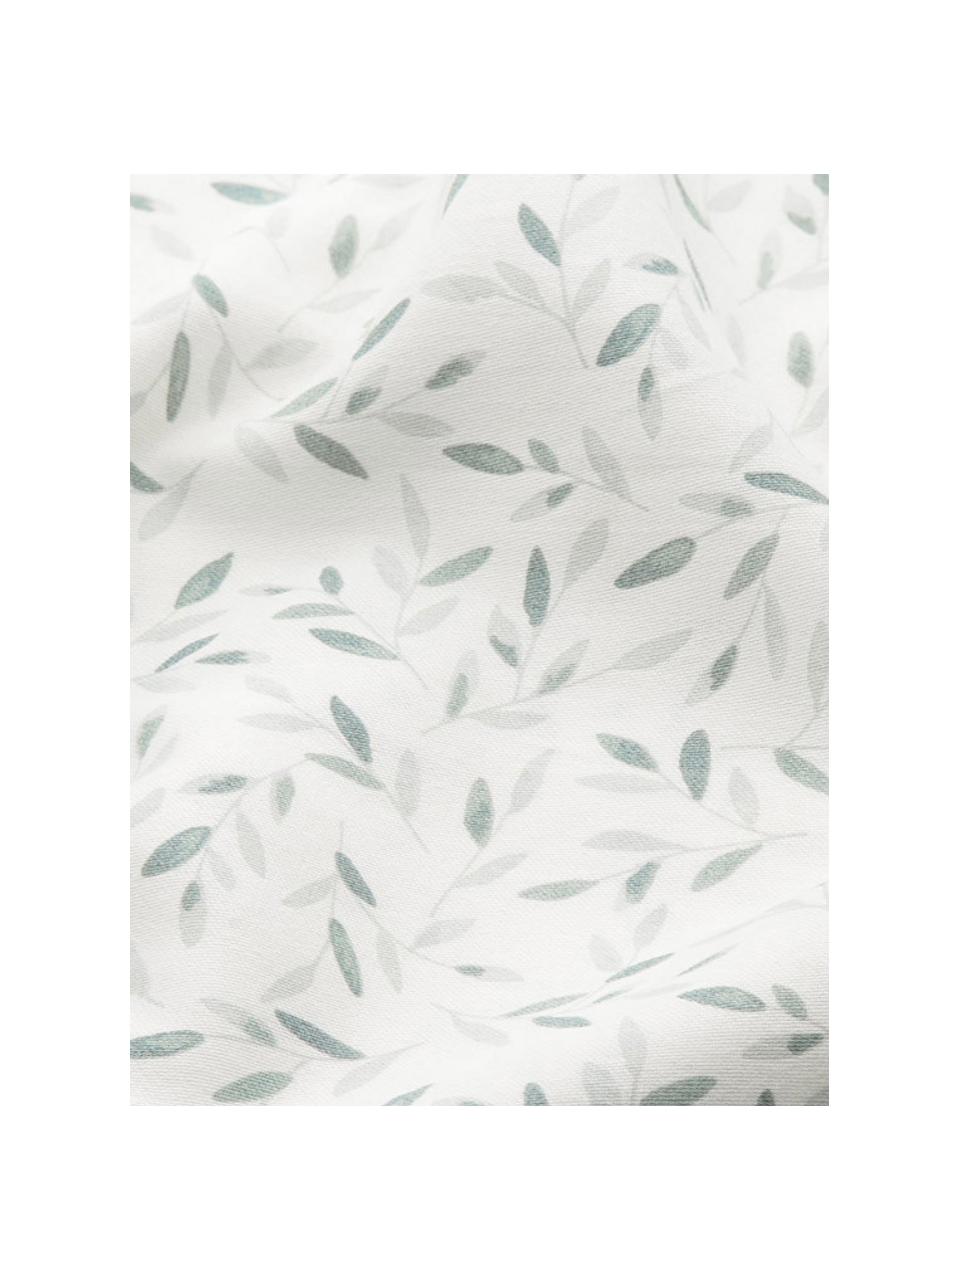 Mata do przewijaka z bawełny organicznej Green Leaves, Biały, zielony, S 30 x D 70 cm